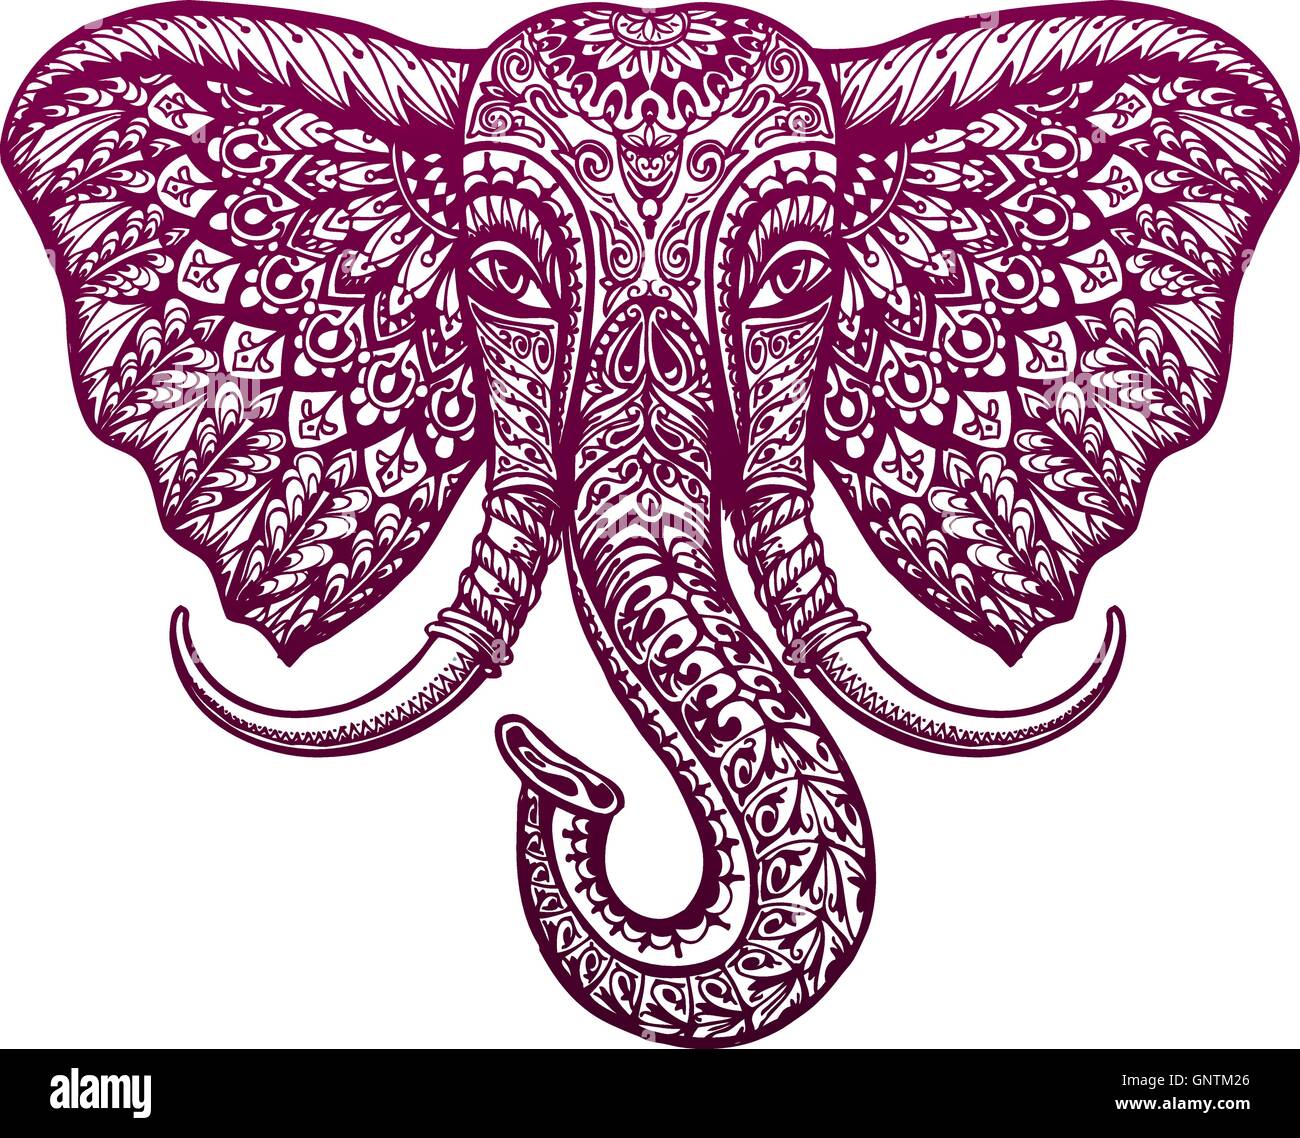 Elefantenkopf gemalt ethnische tribal Ornament. Vektor-illustration Stock Vektor